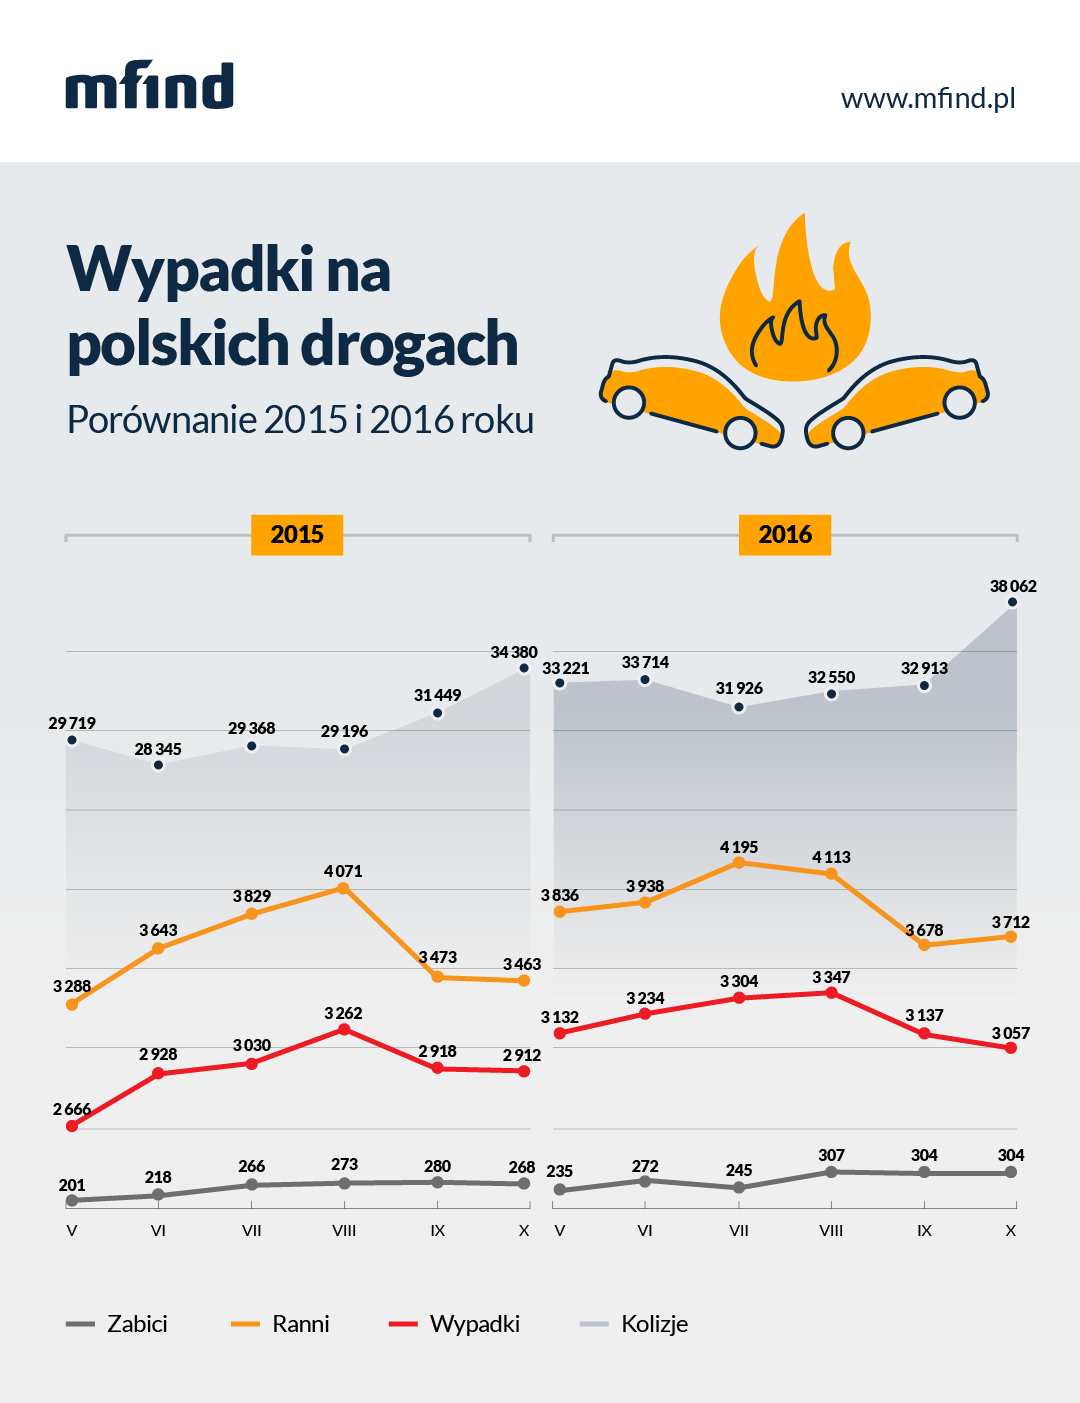 Wypadki w Polsce - porównanie 2015 i 2016 - analiza Punkta